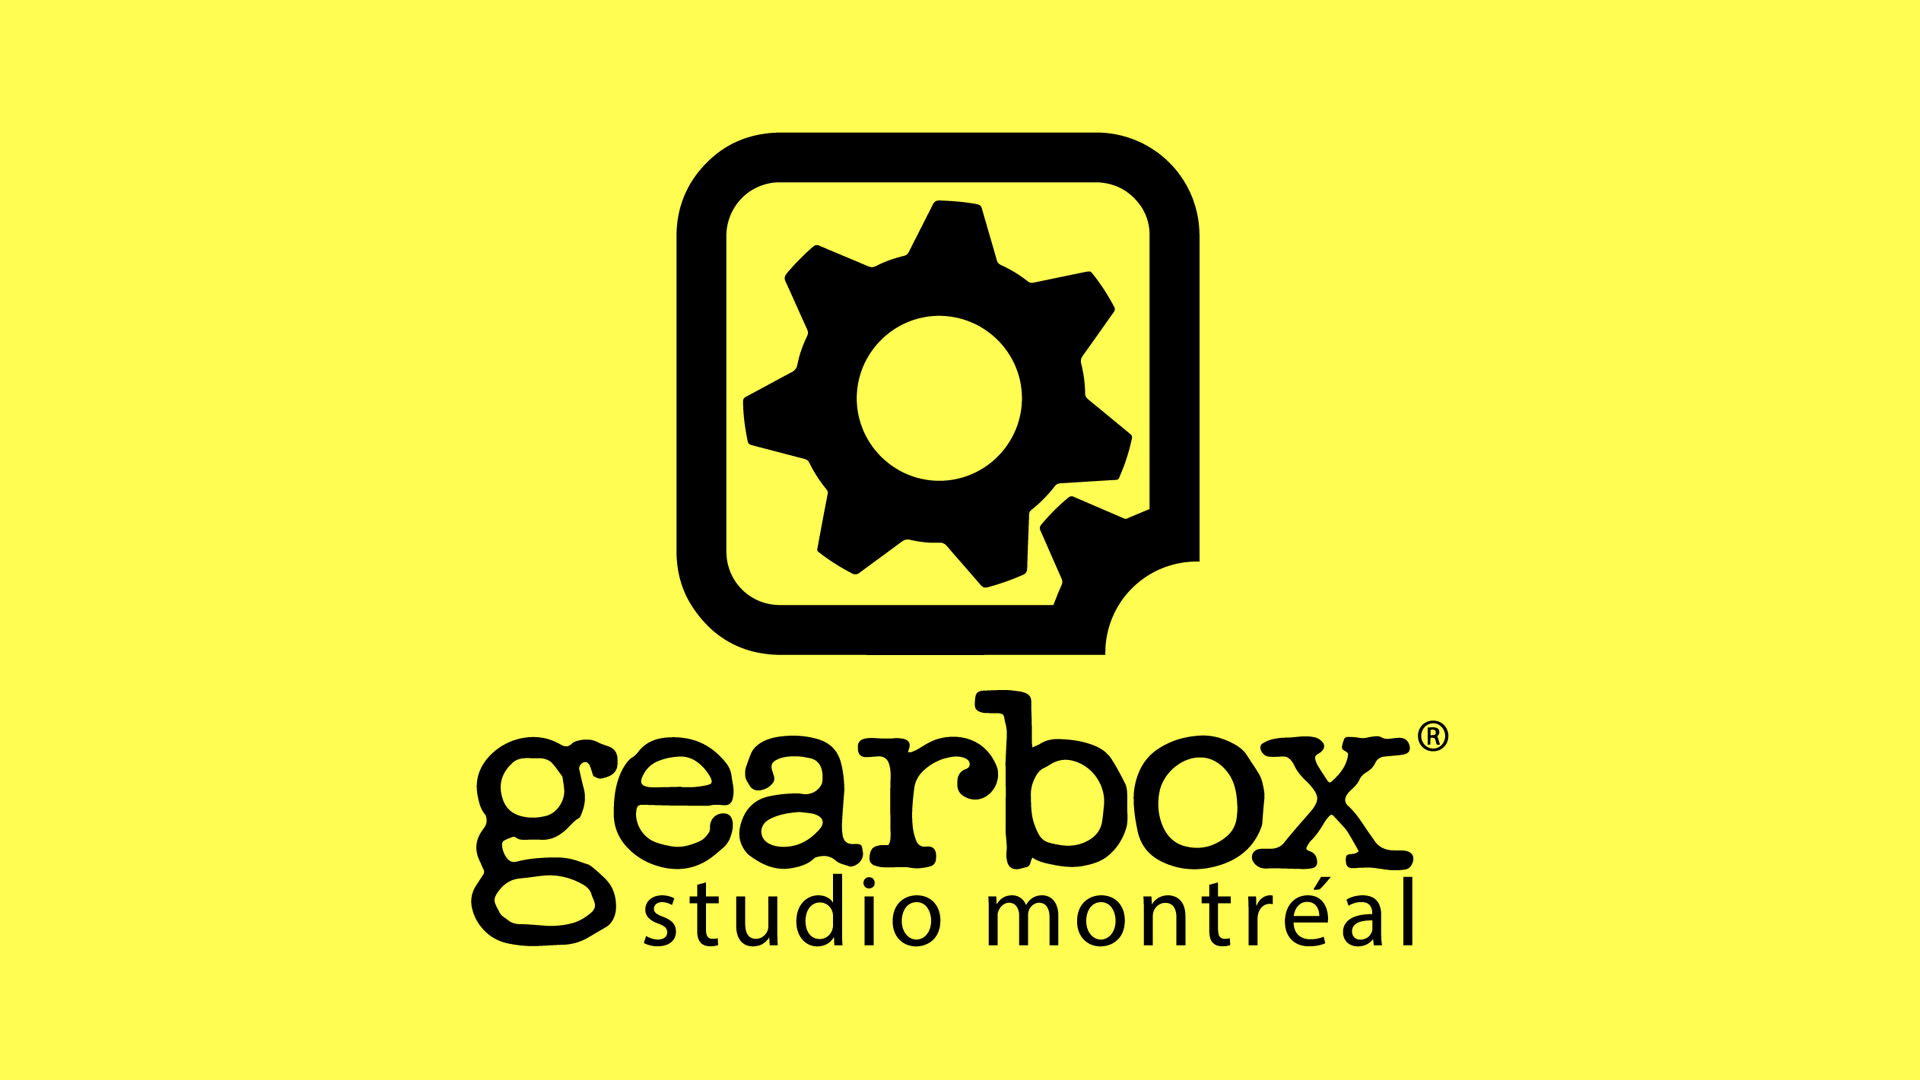 Mjenjač Studio Montreal 08 26 21 1